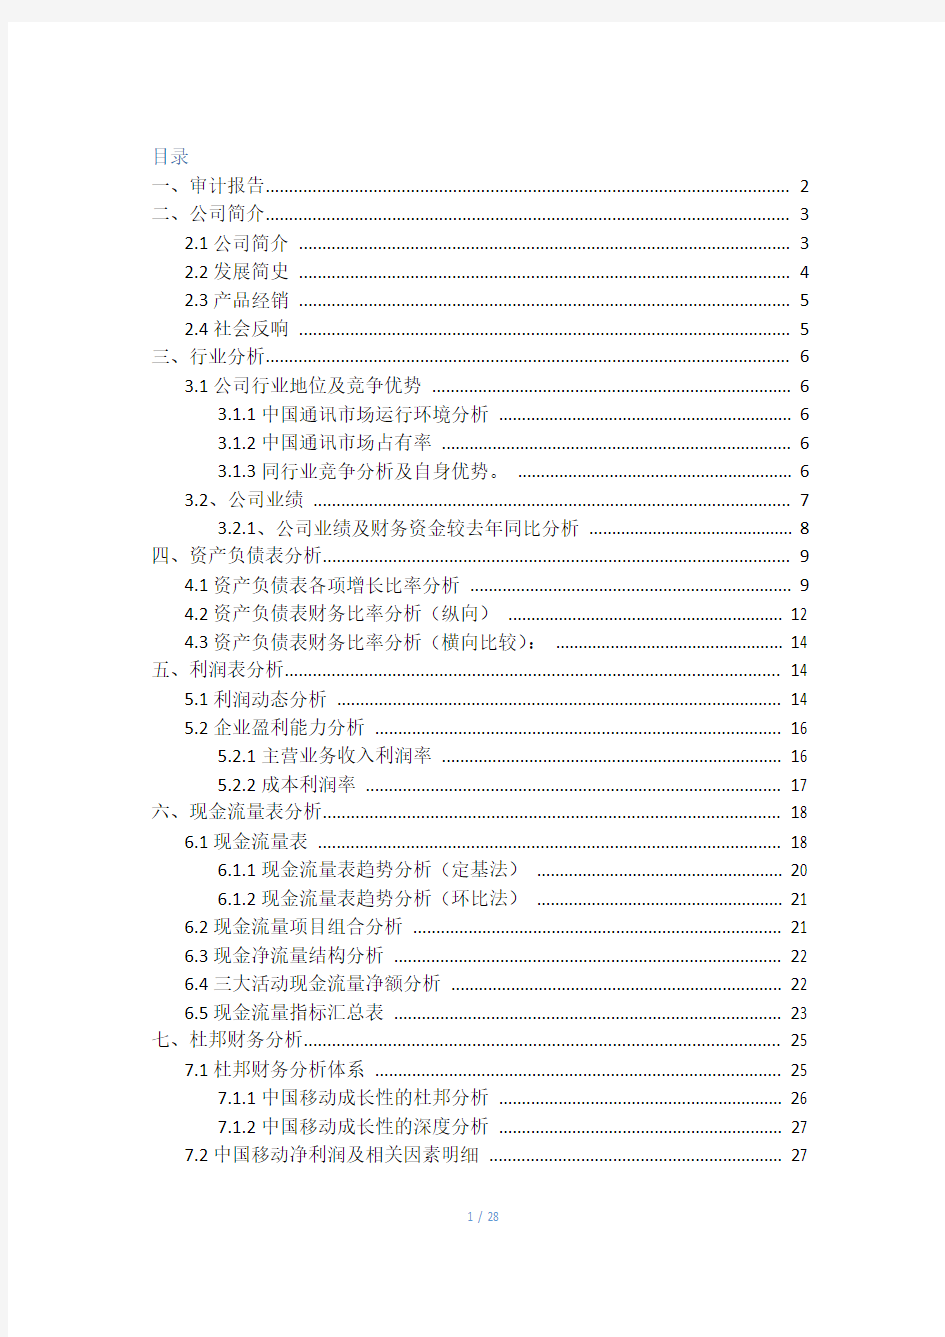 2014中国移动公司财务报表分析